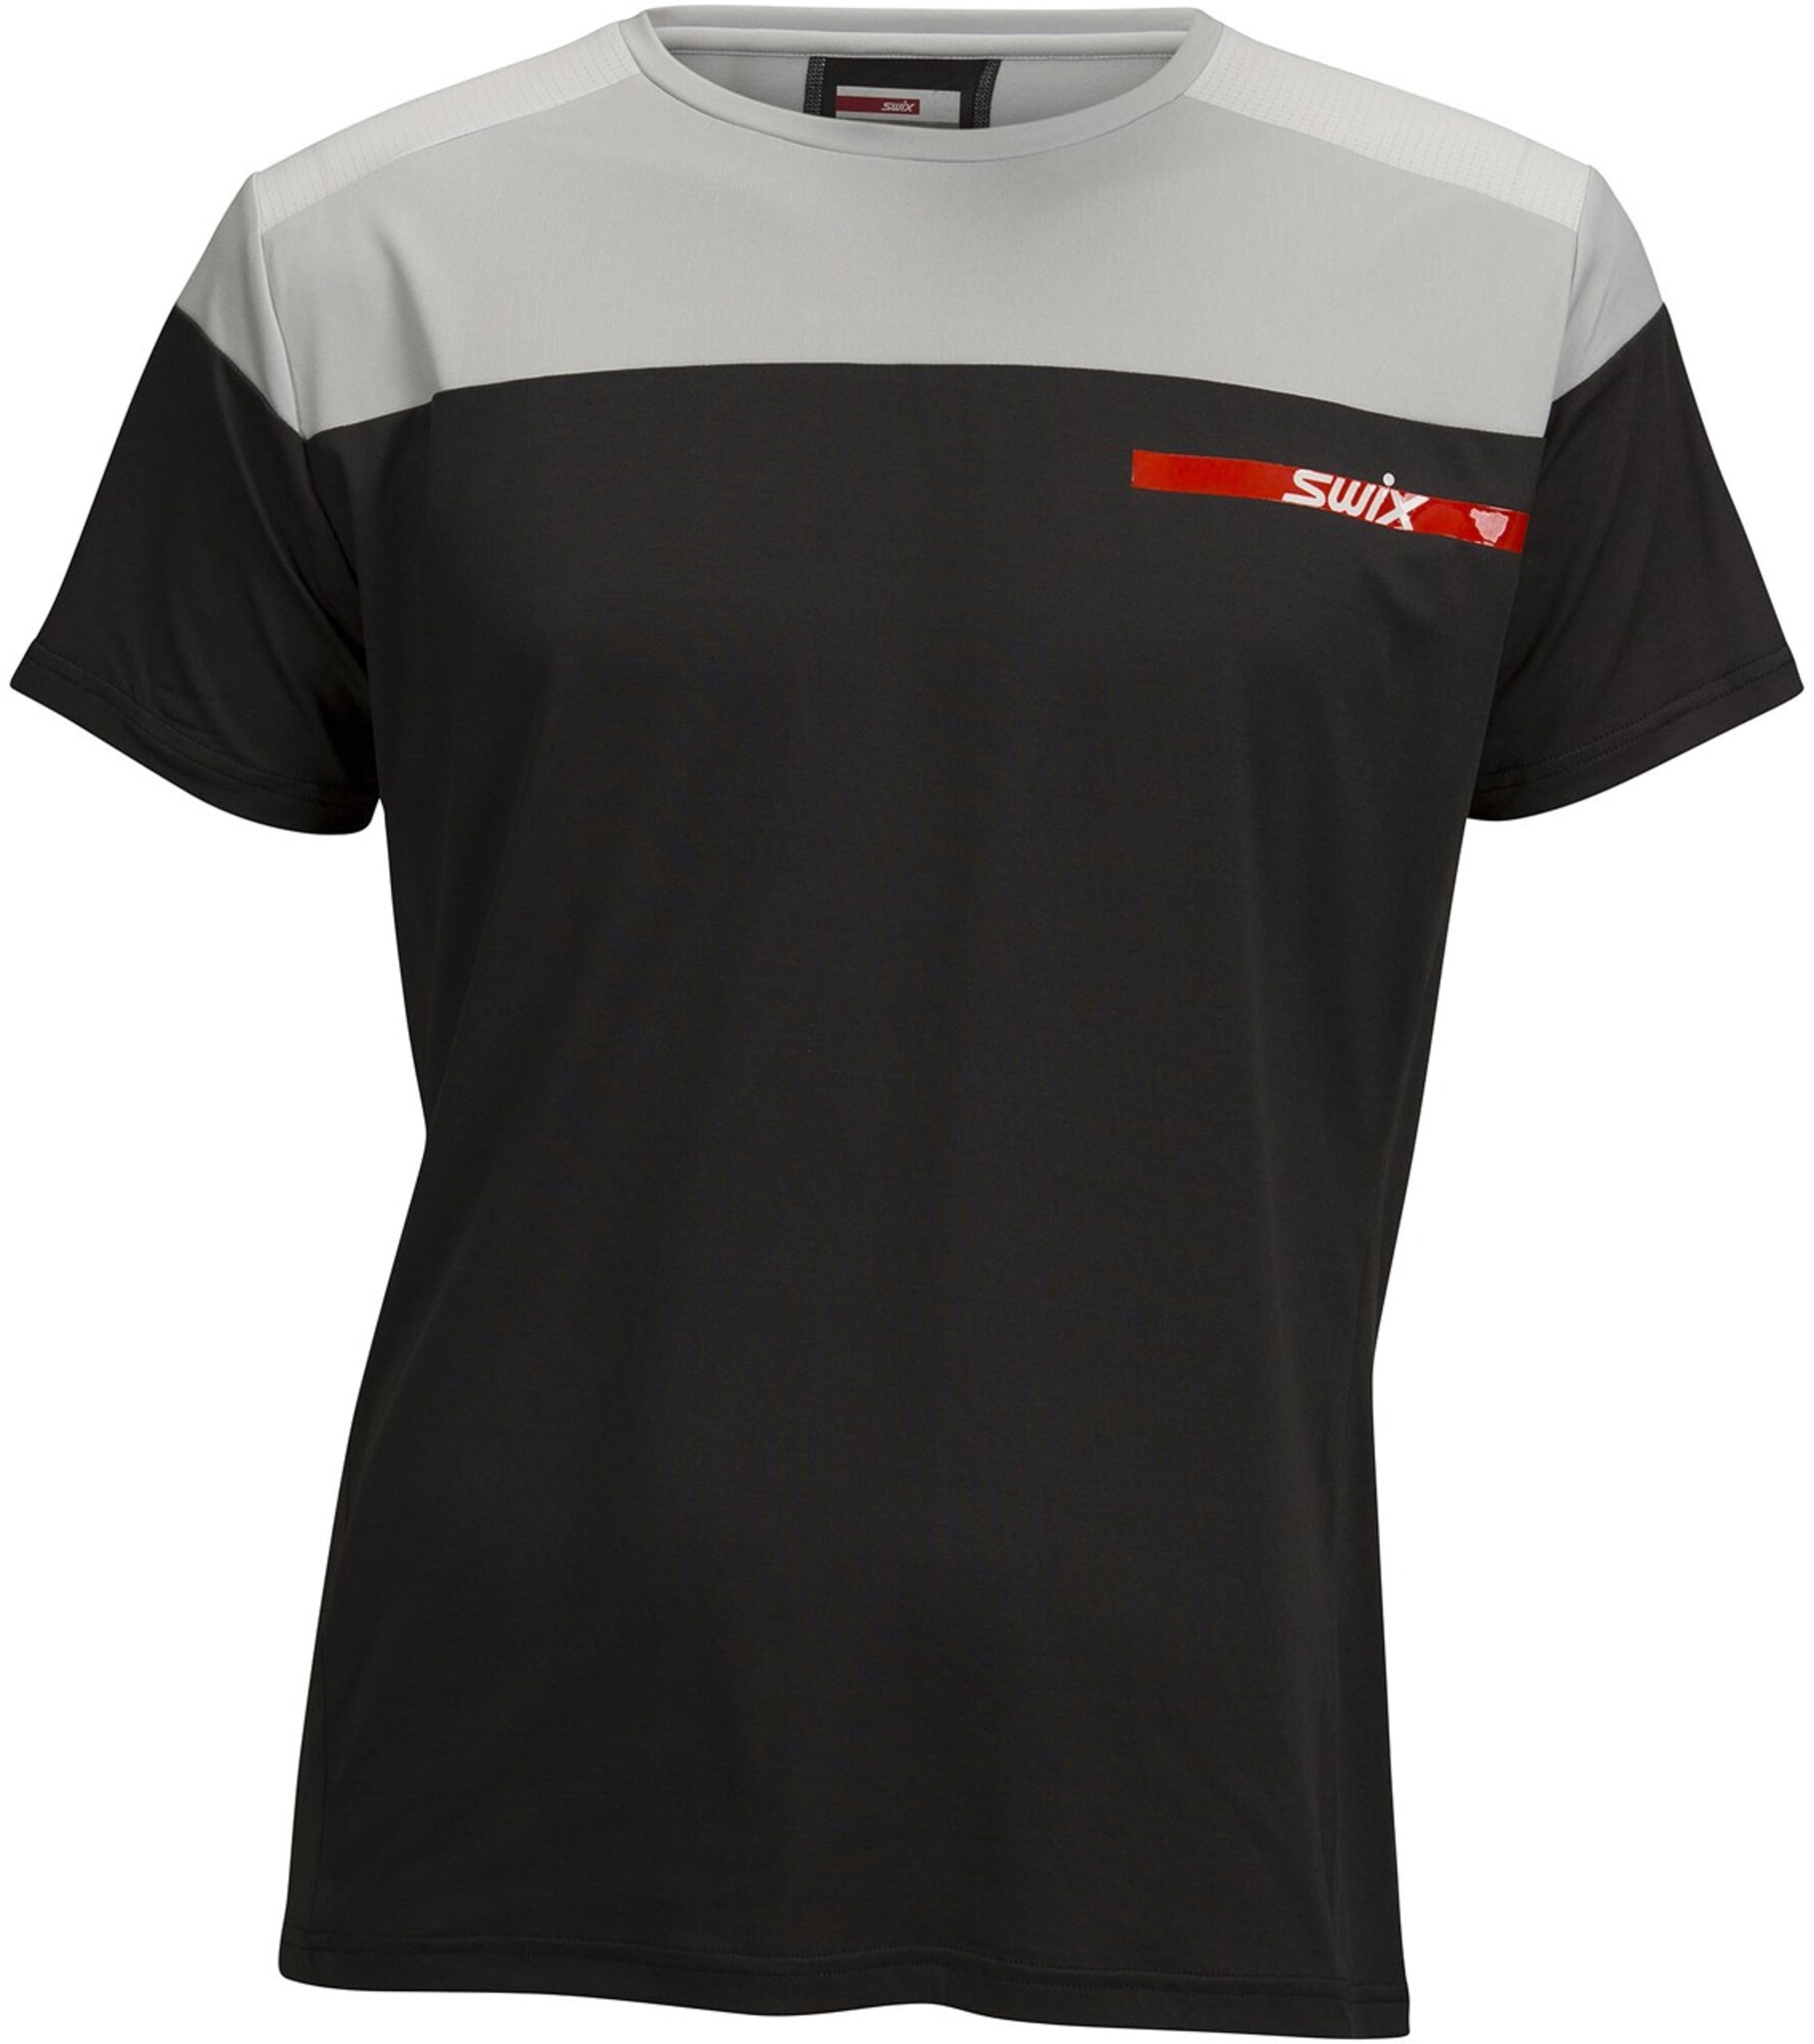 En veldig elastisk, lett, luftig og teknisk avansert trenings T-skjorte.